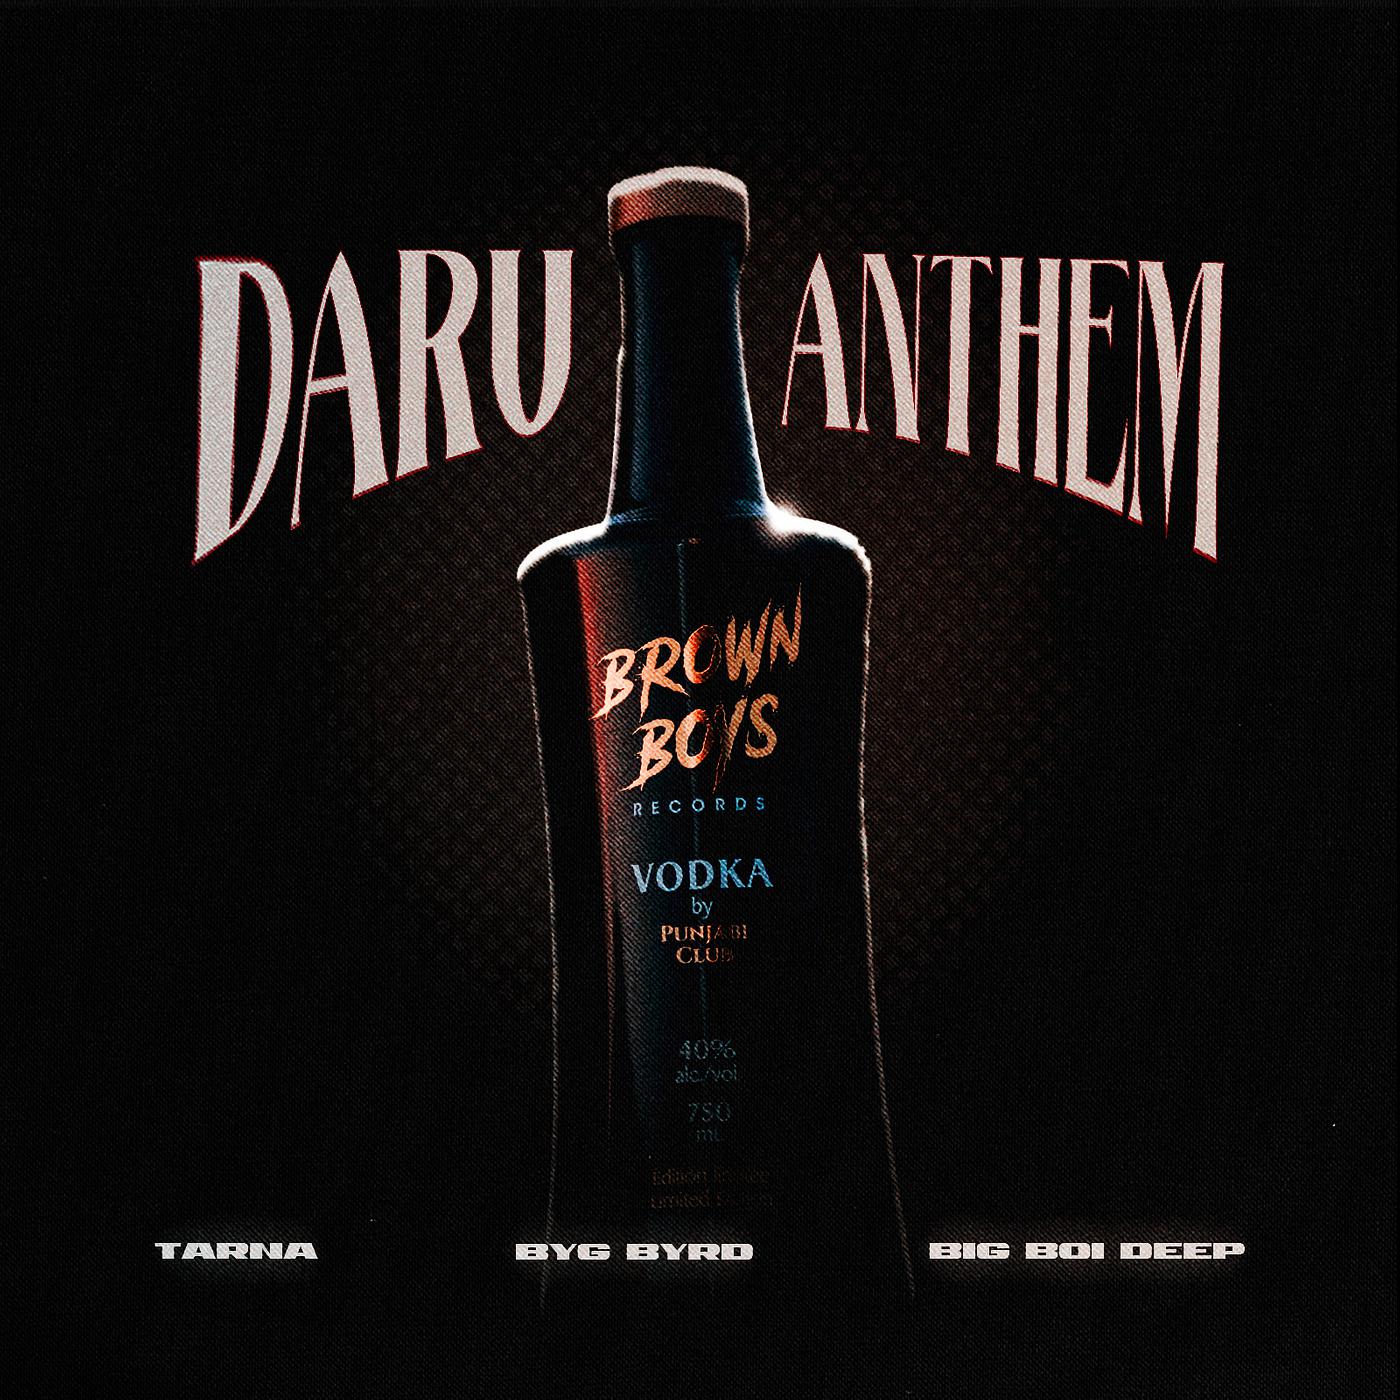 Постер альбома Daru Anthem (Brown Boys Vodka)